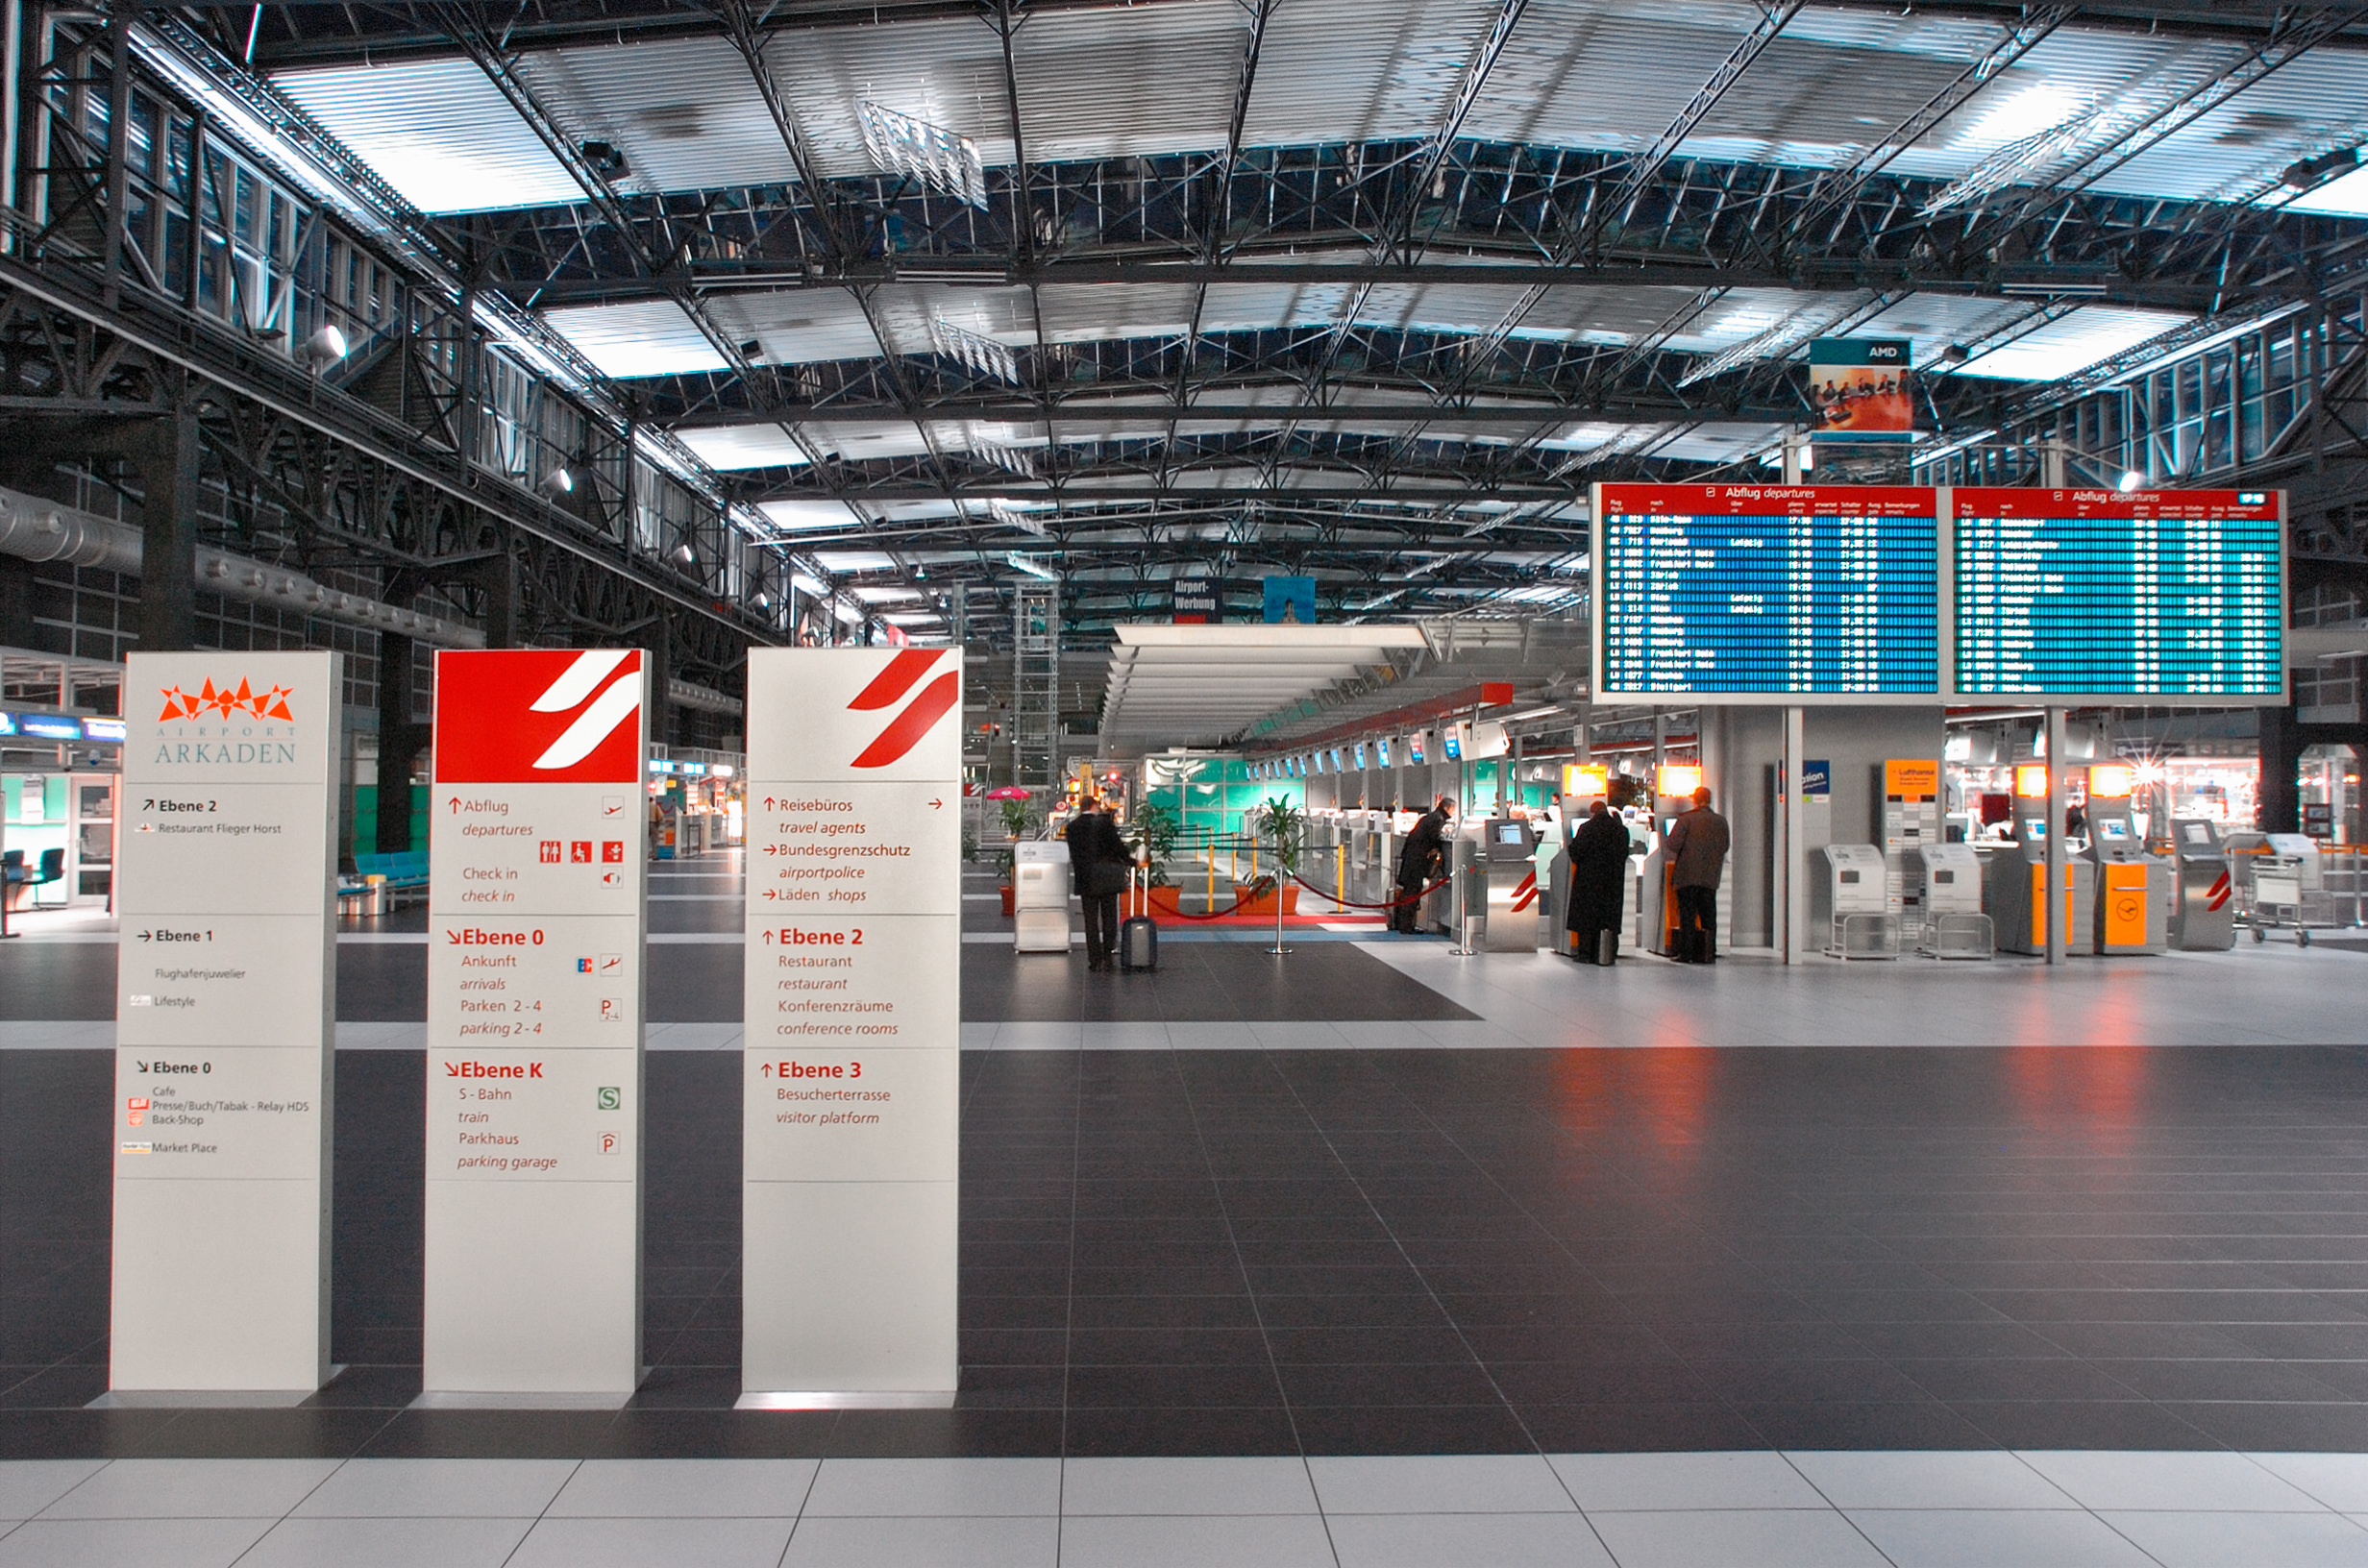 Foto; Am Flughafen; Mittig ist die blaue Anzeigetafel mit den An- und Anflügen zu sehen; rechts sind Schalter zum Einchecken und einige Personen warten davor.